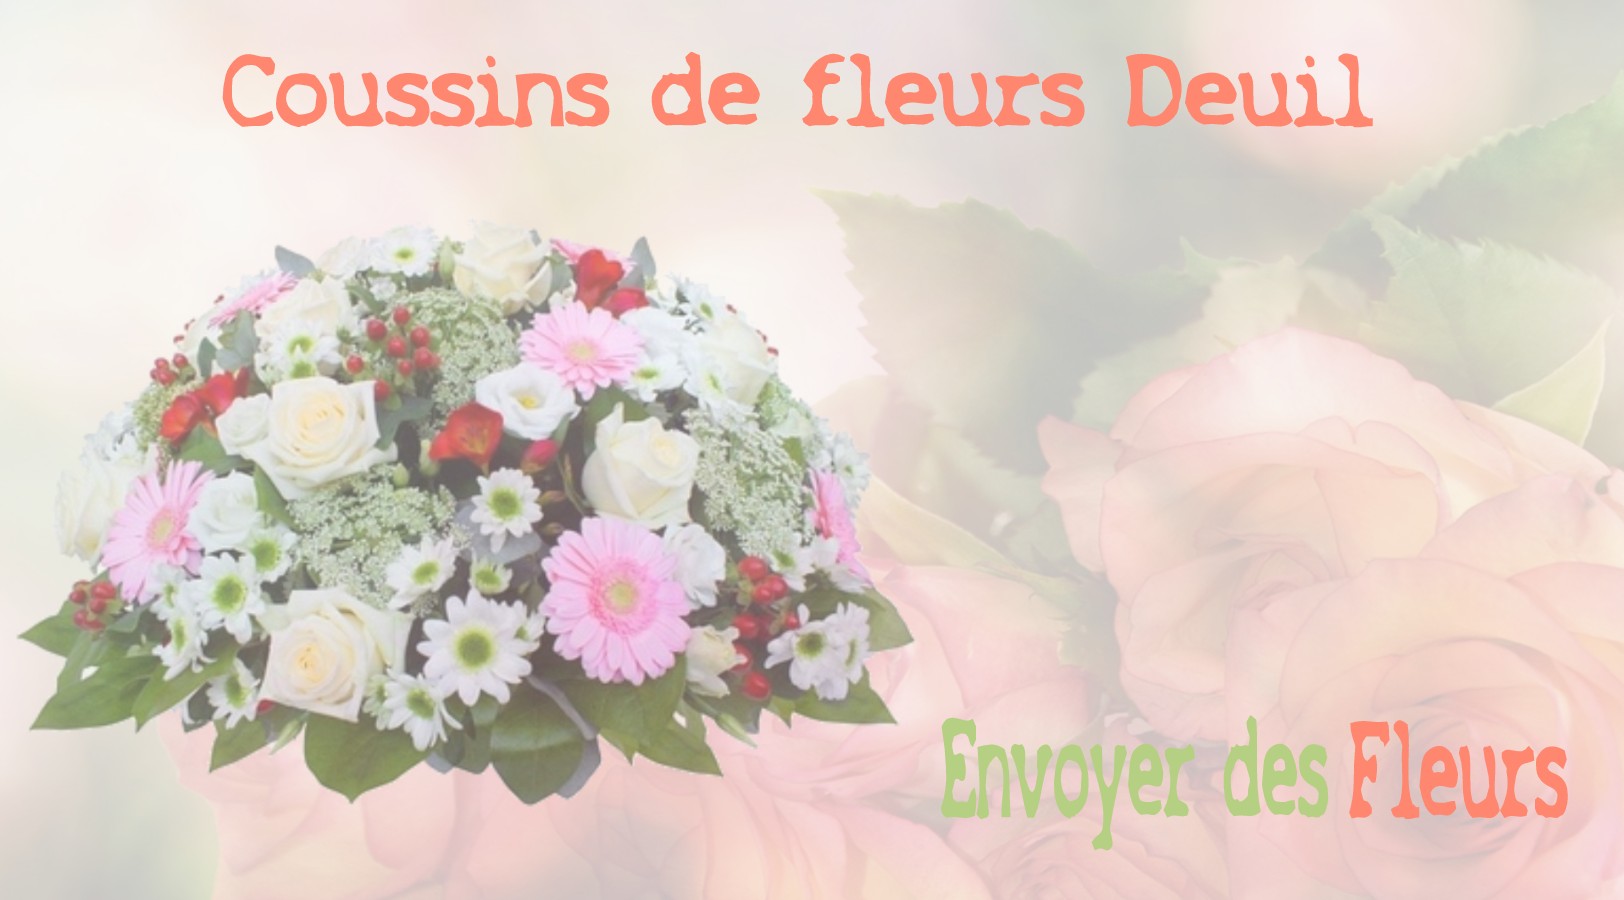 Les coussins de fleurs deuil - LIVRAISON FLEURS DEUIL A VILLEMAREUIL 77